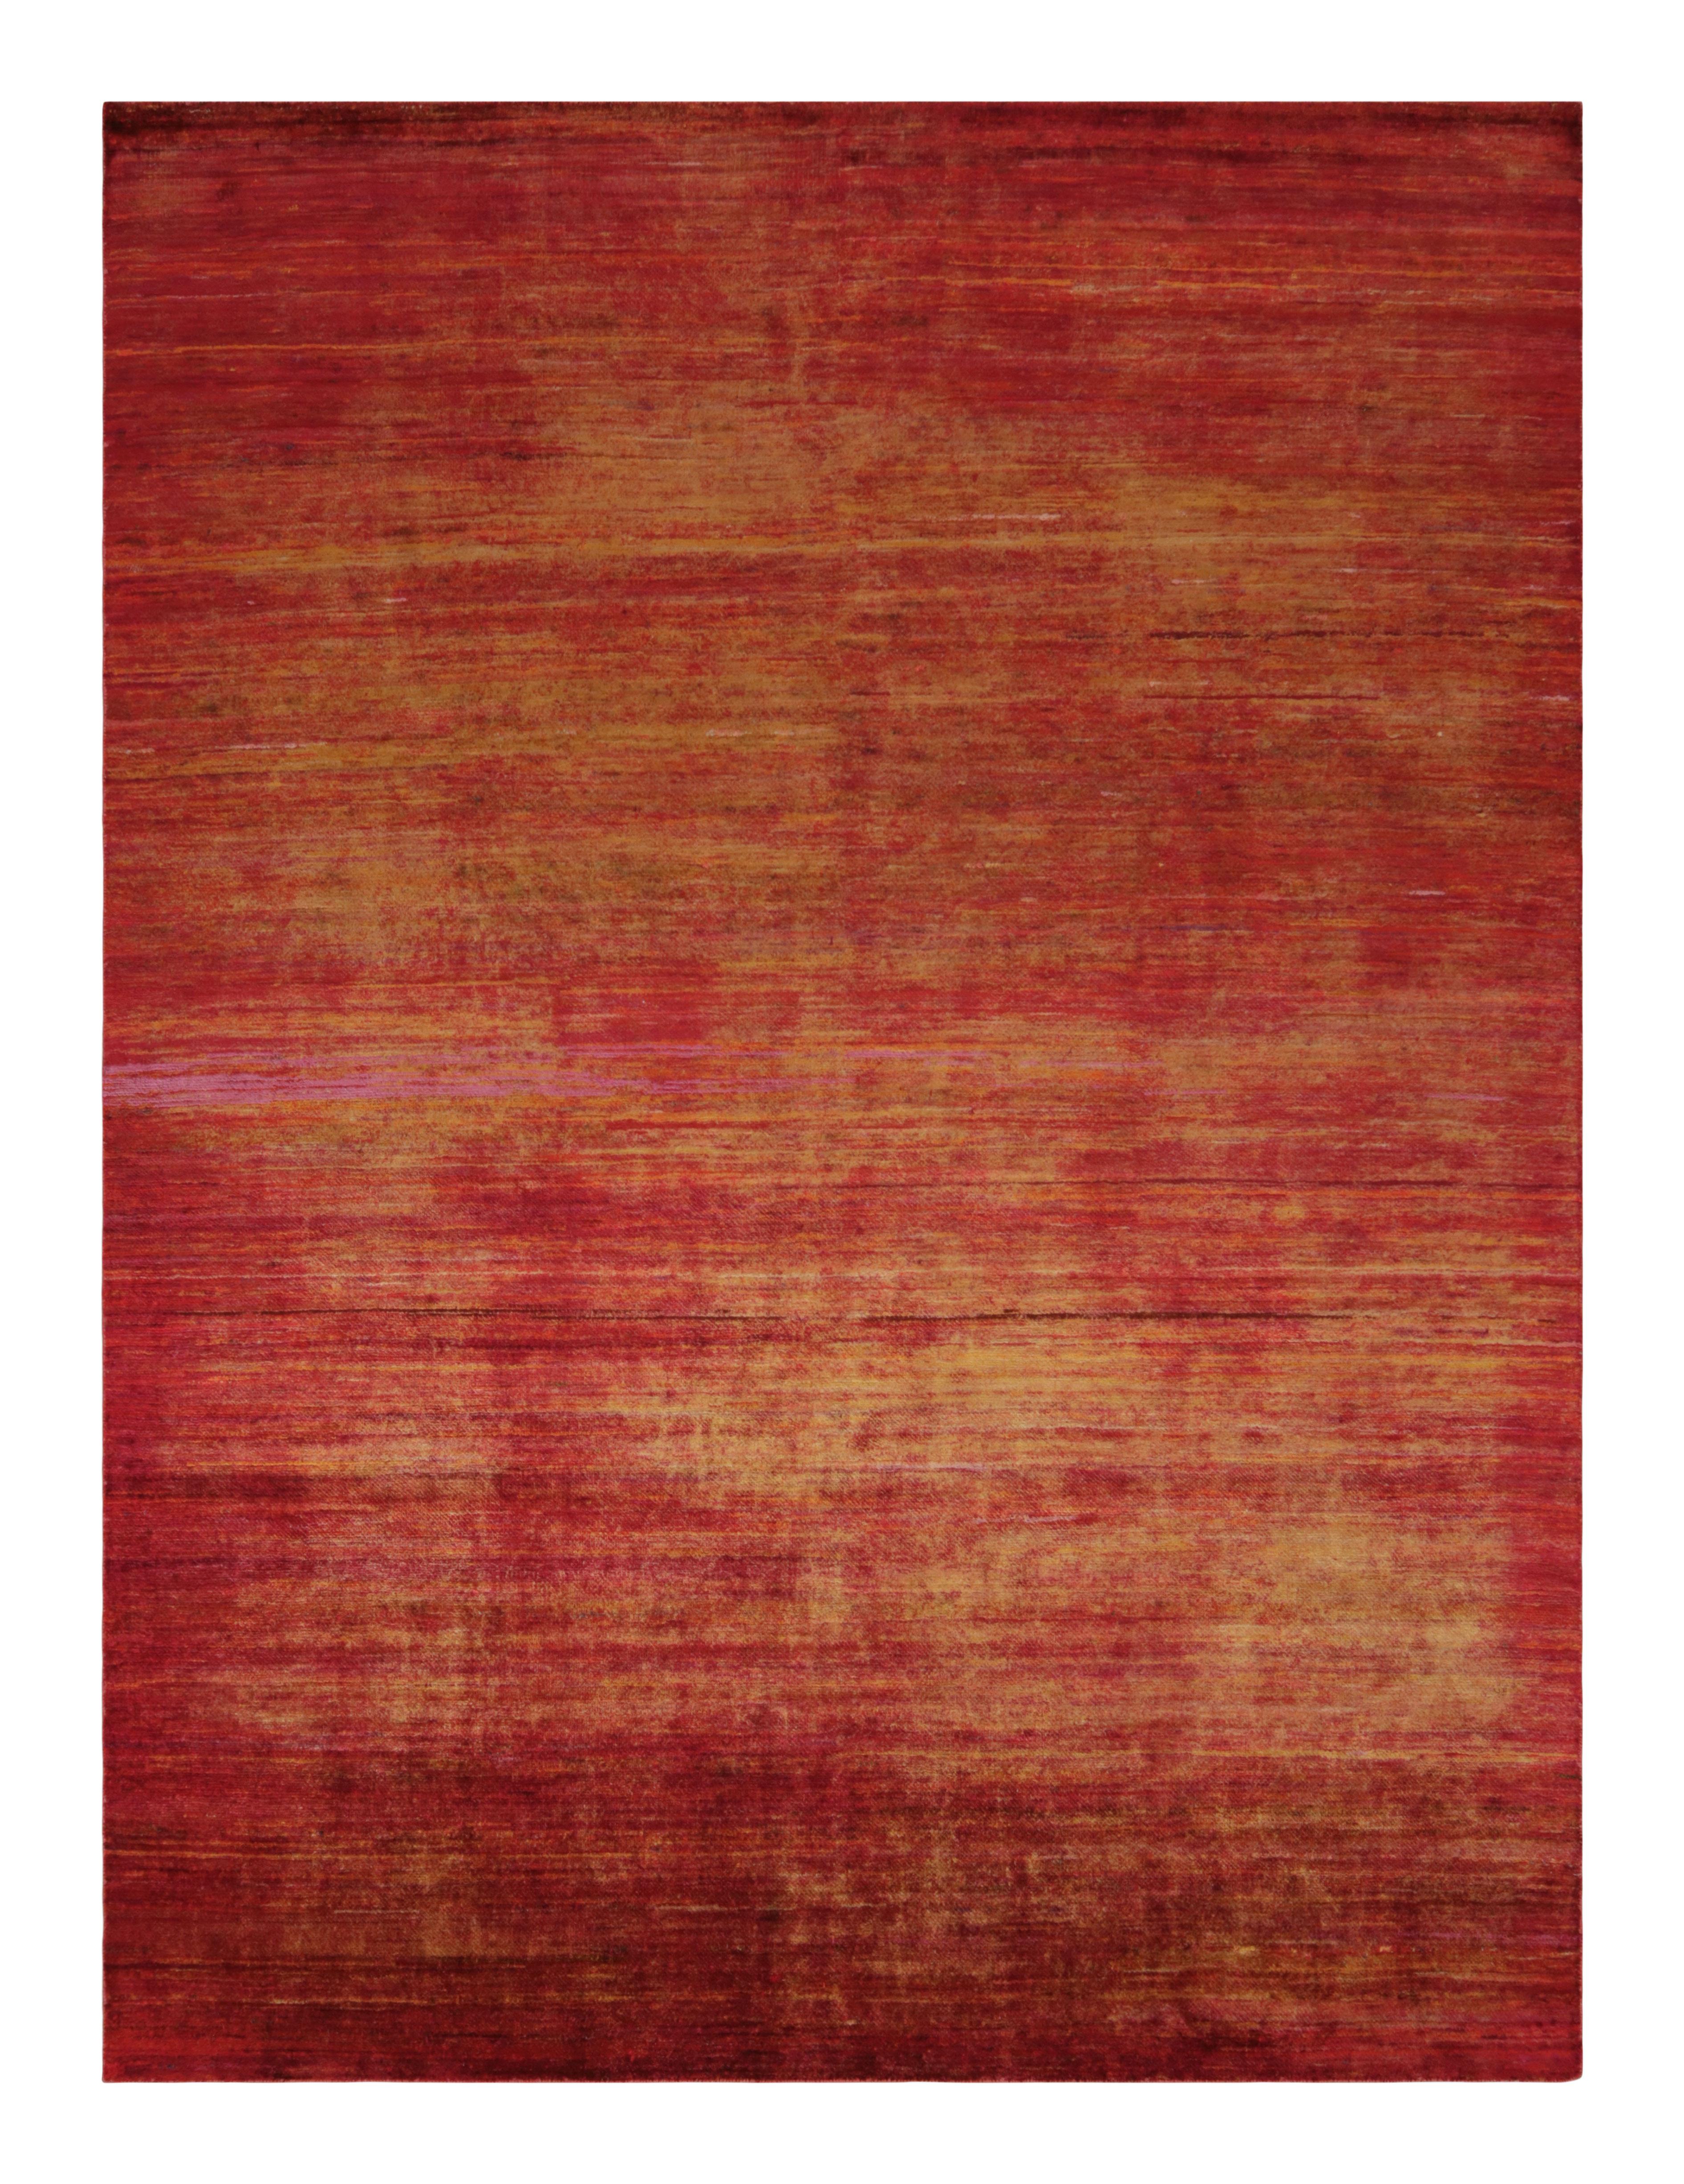 Noué à la main en soie, ce tapis 8x10 est un nouvel ajout audacieux à la Collection Texture of Color de Rug & Kilim.

Sur le Design :

Ce tapis reflète notre innovation en matière de styles de tapis unis et de polyvalence confortable. La brillance